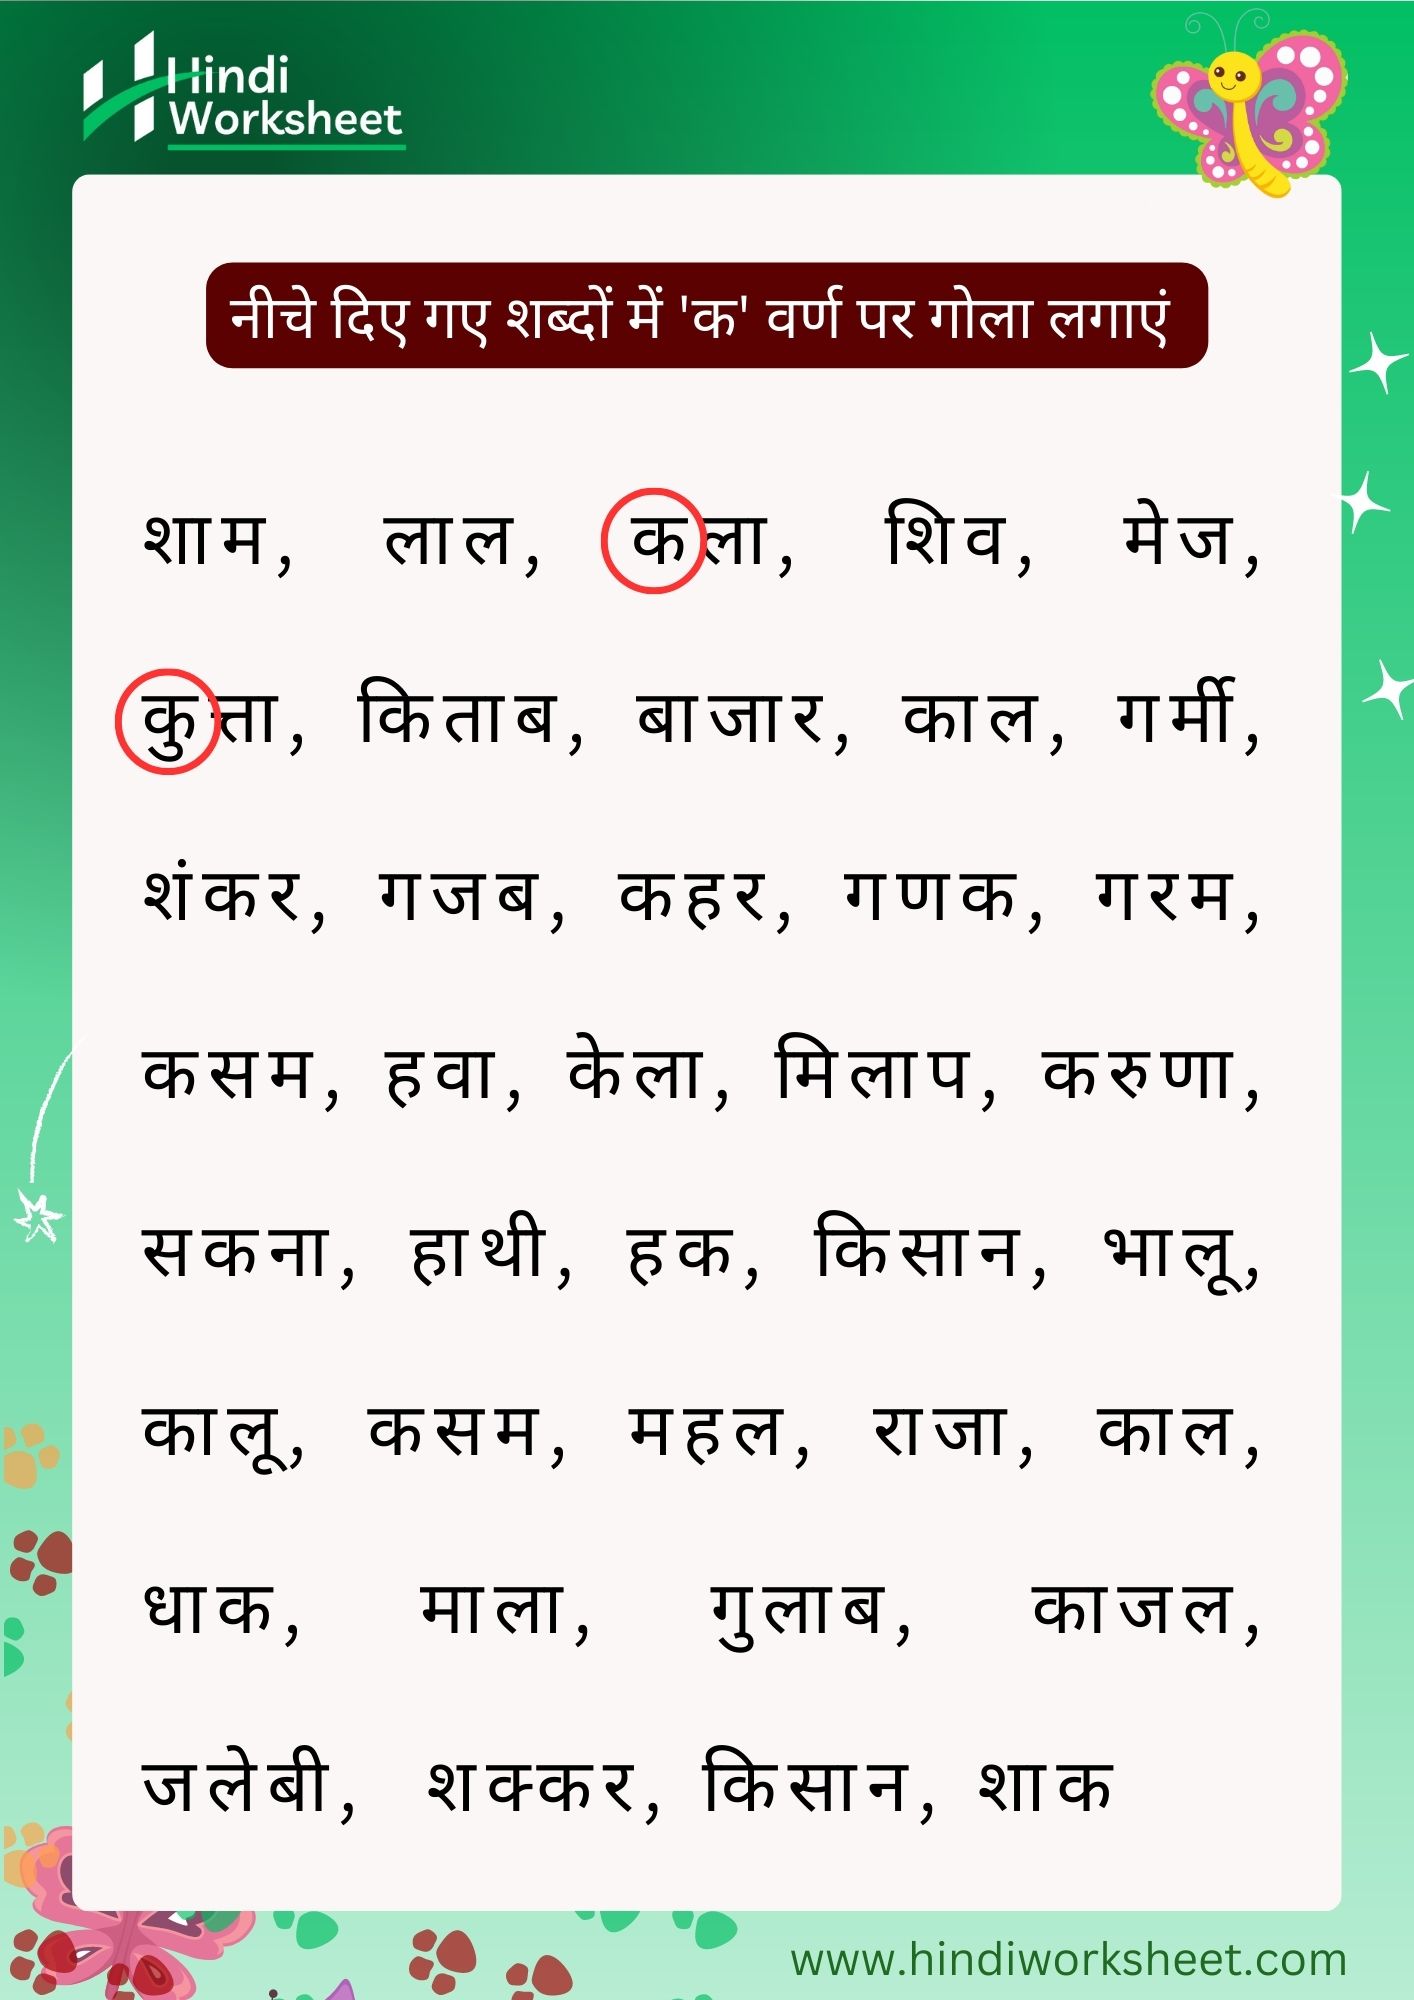 ukg class hindi homework